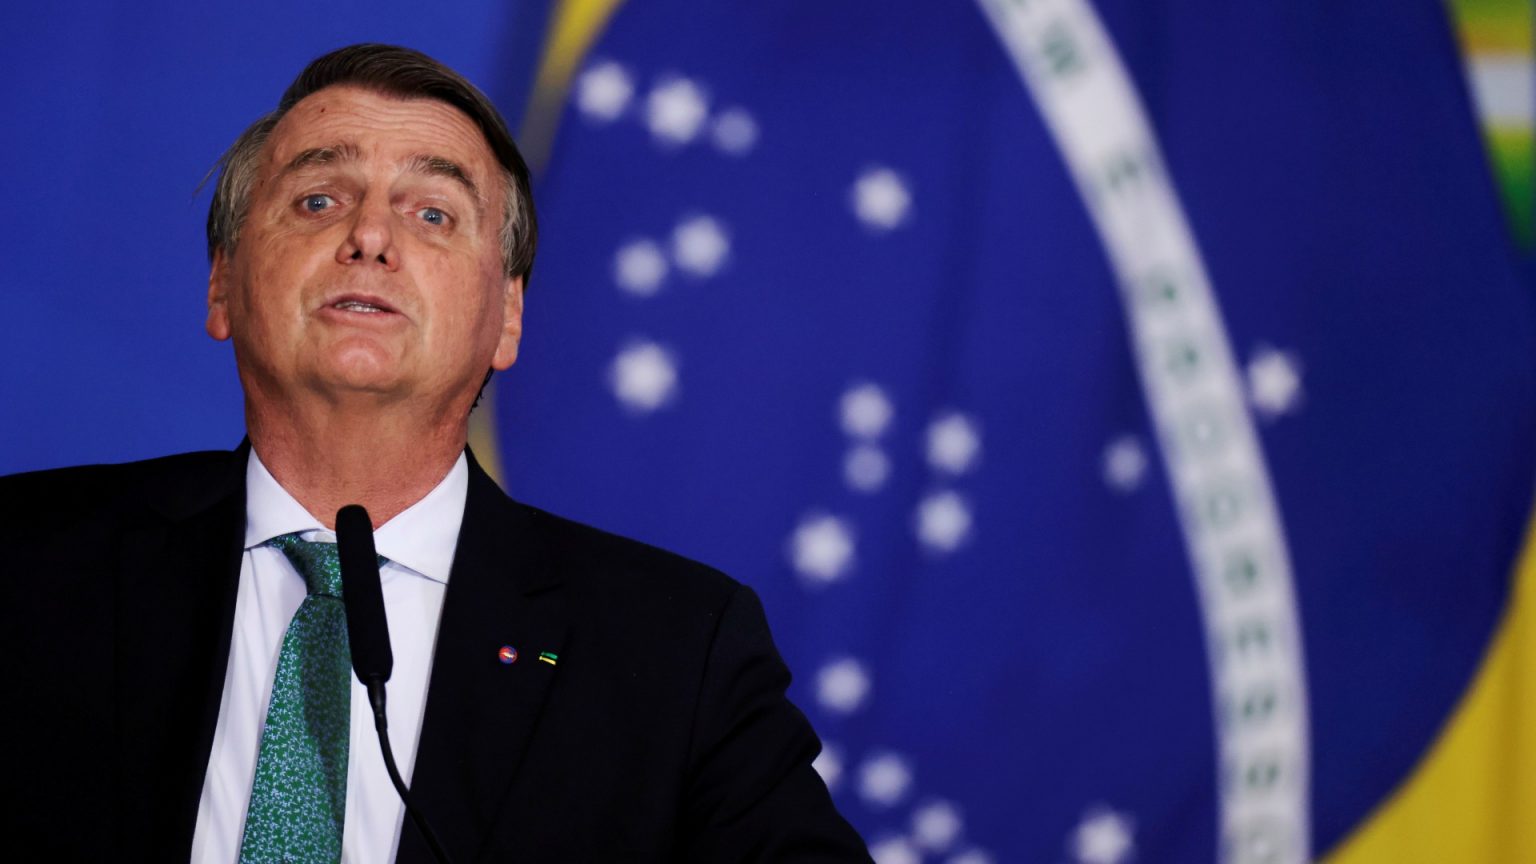 La Cámara de Diputados de Brasil registra otra solicitud de ‘impeachment’ contra Bolsonaro